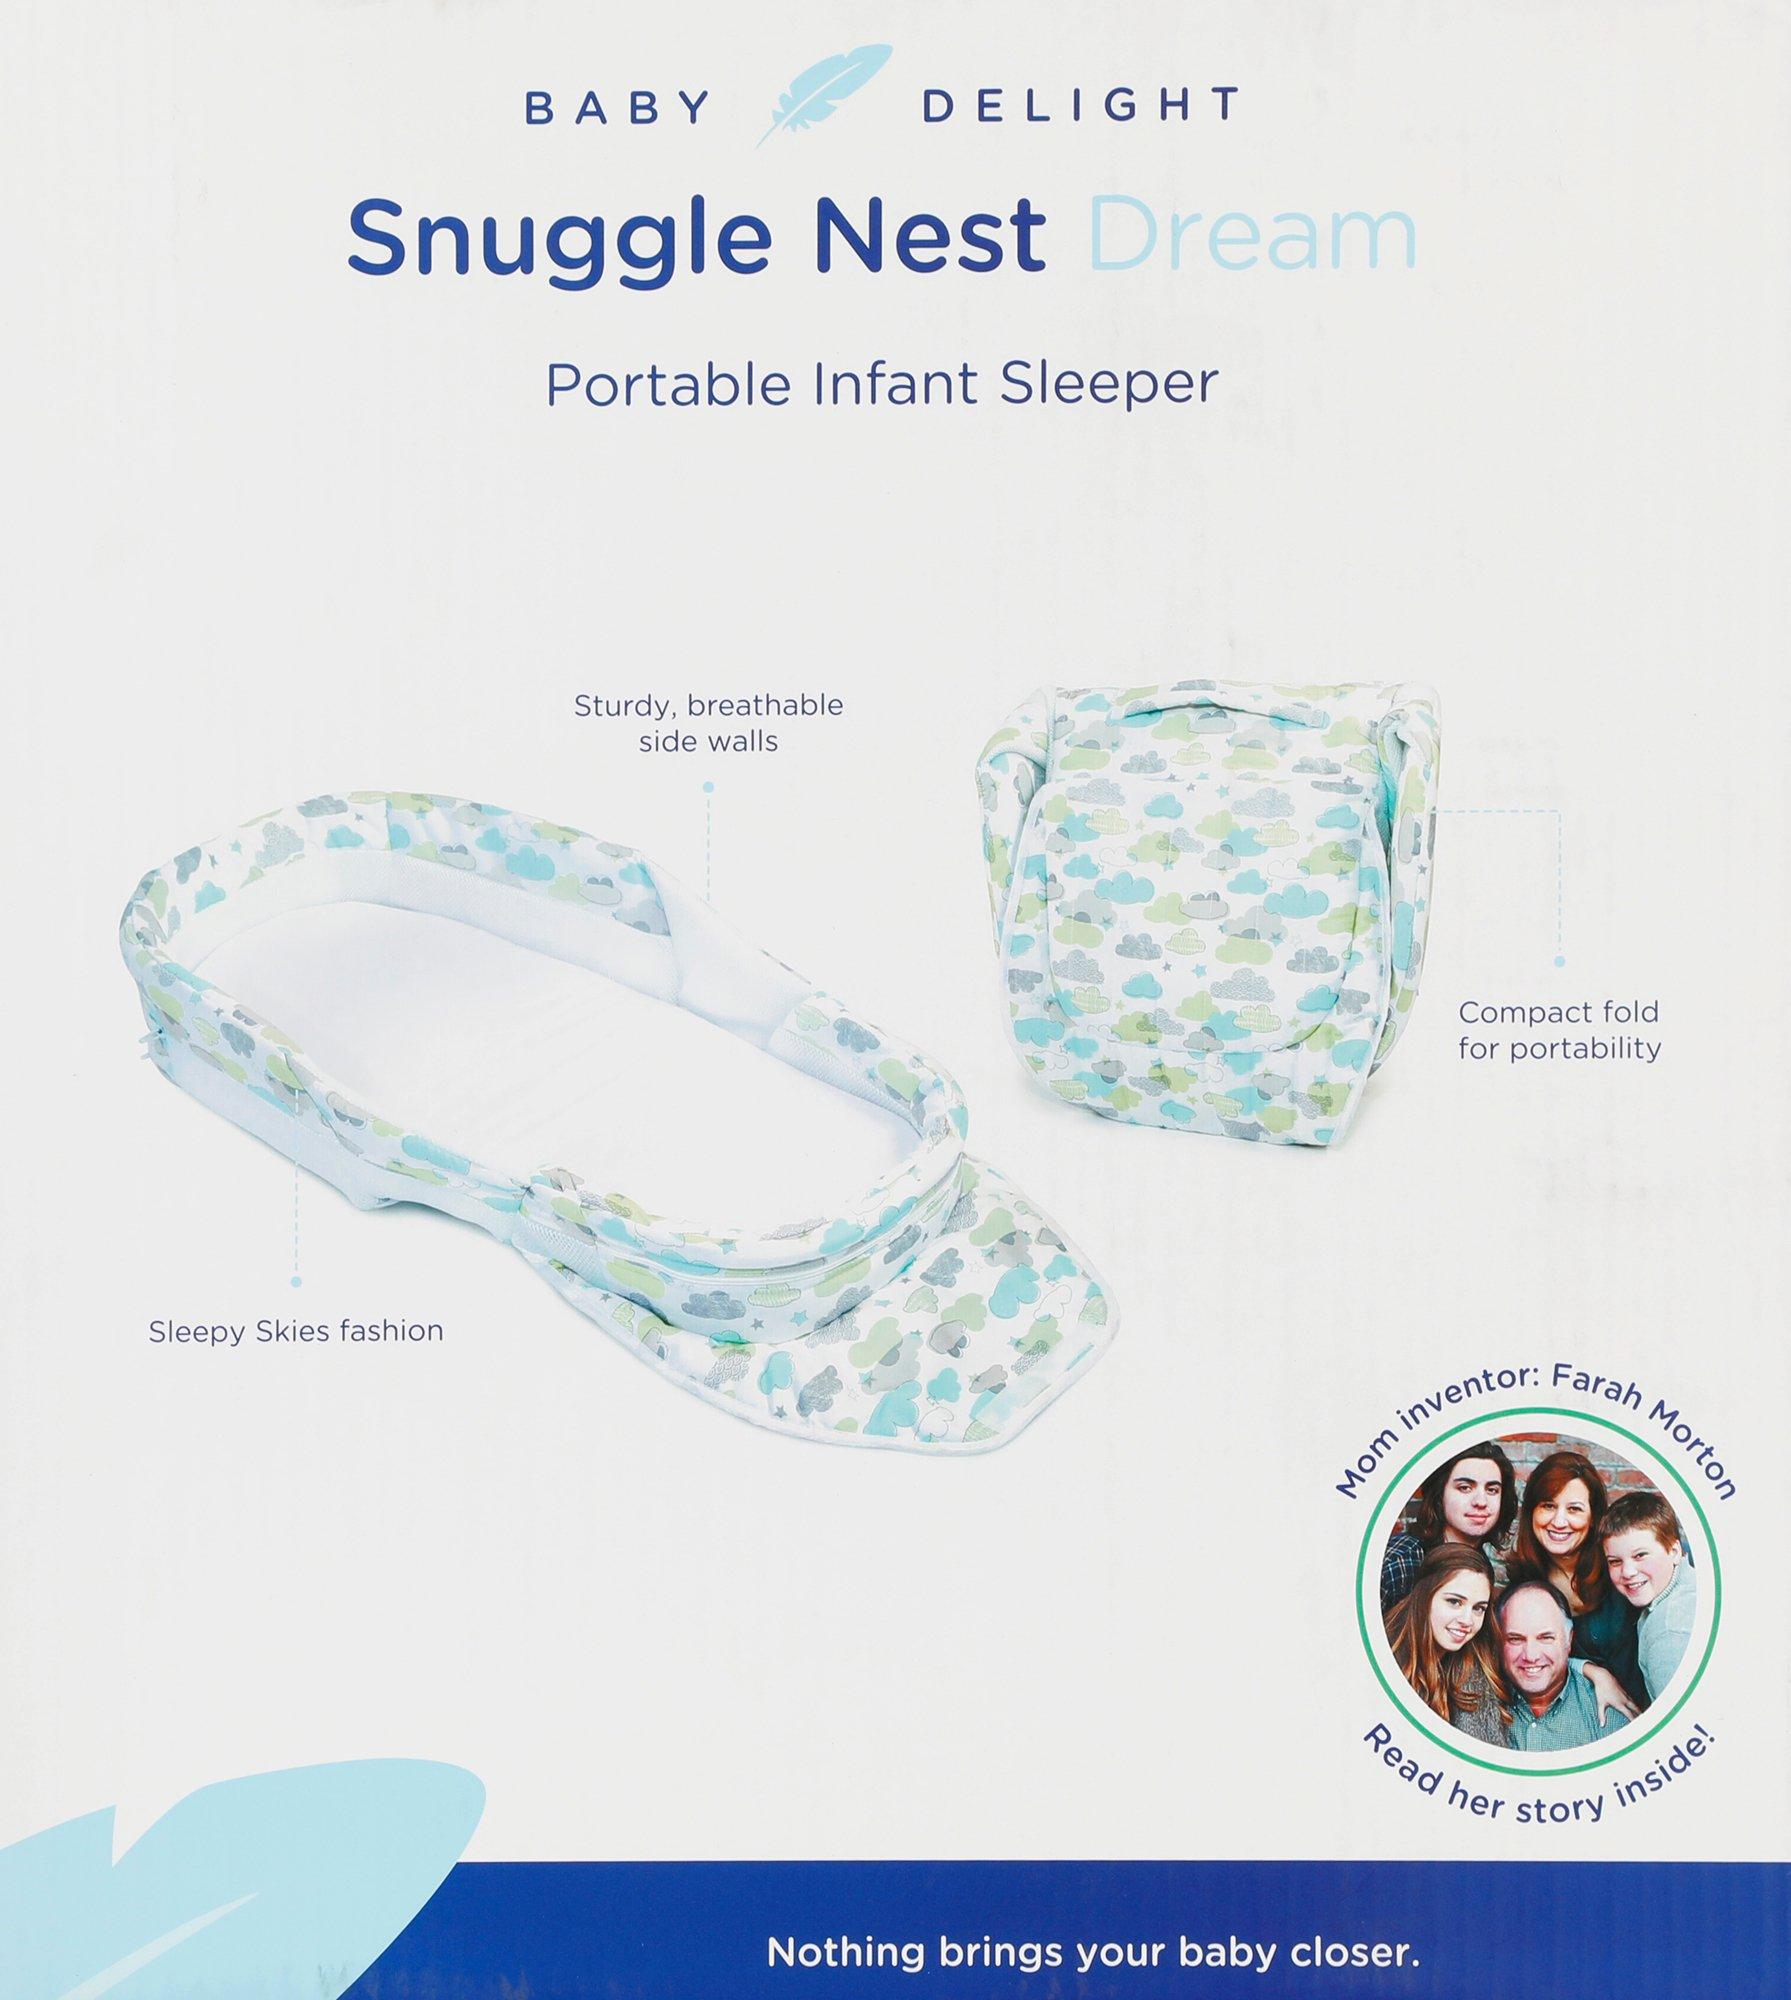 baby delight snuggle nest dream portable infant sleeper